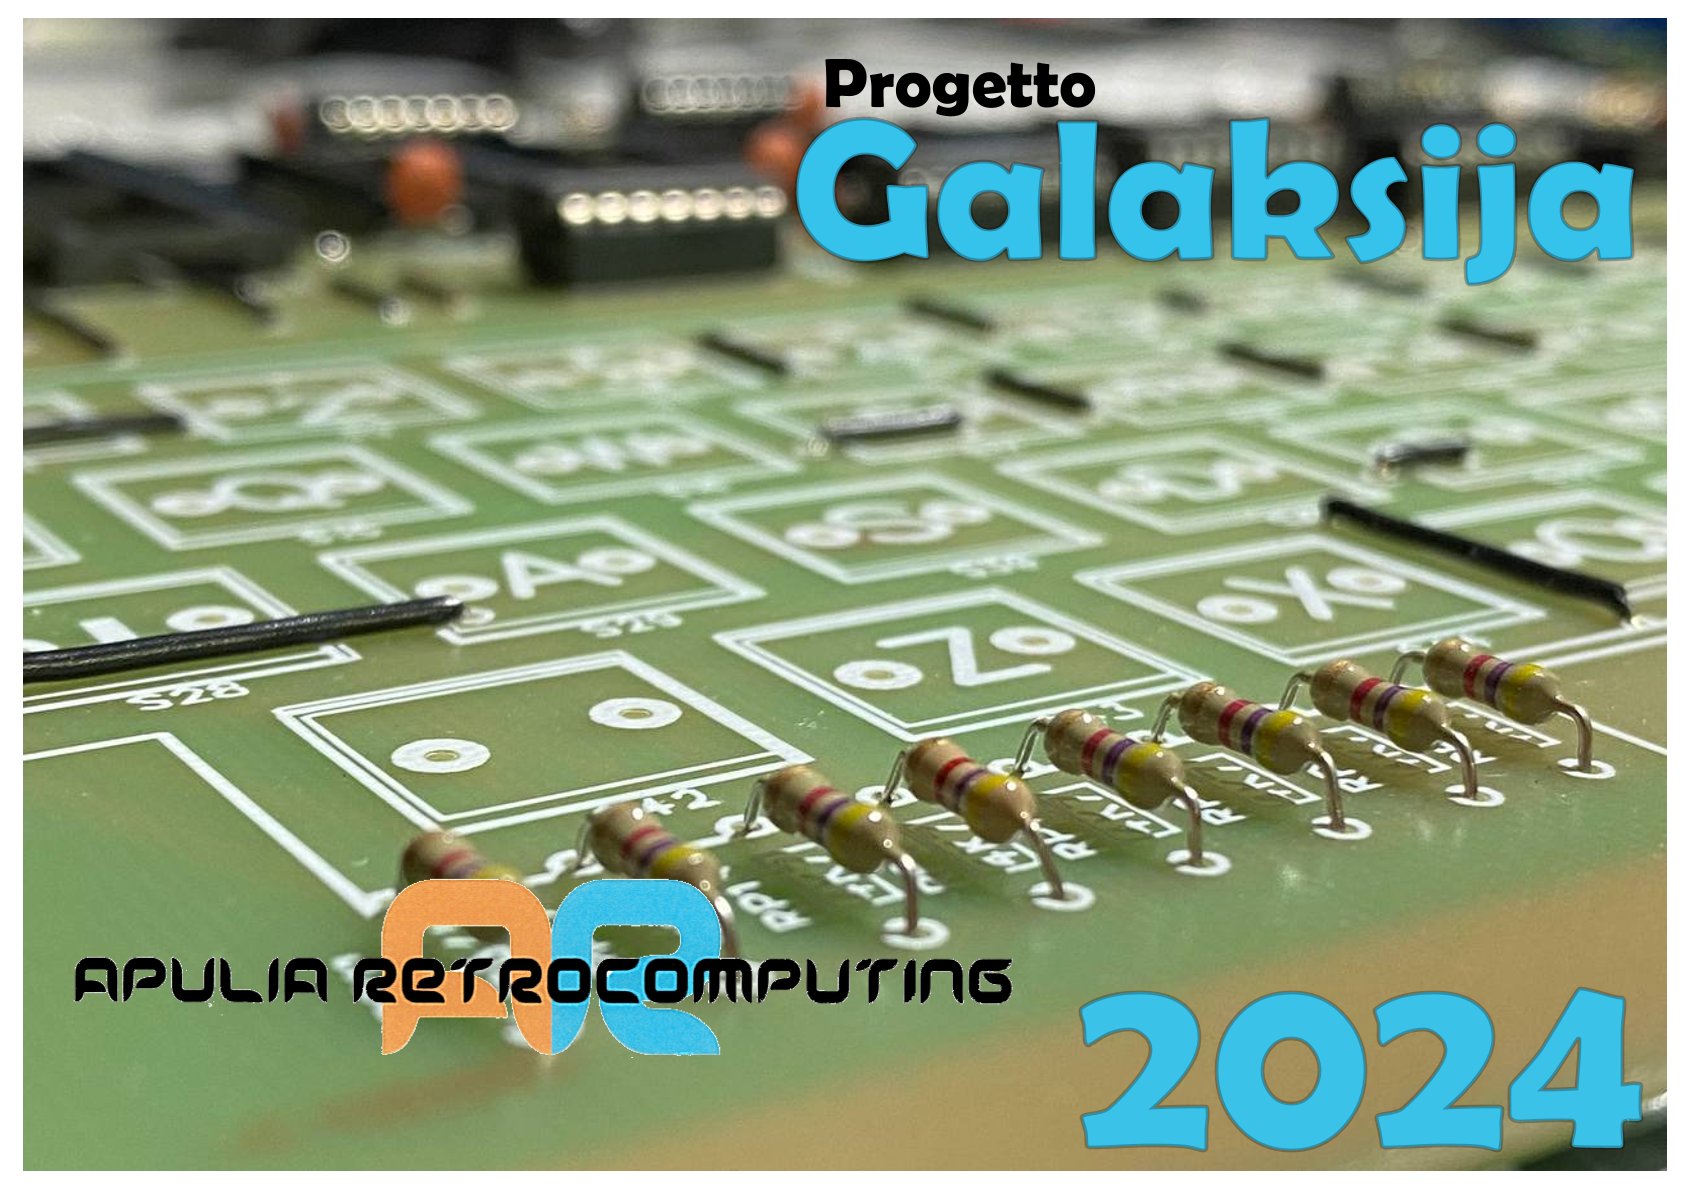 E' uscito il Calendario 2024 di Apulia Retrocomputing!